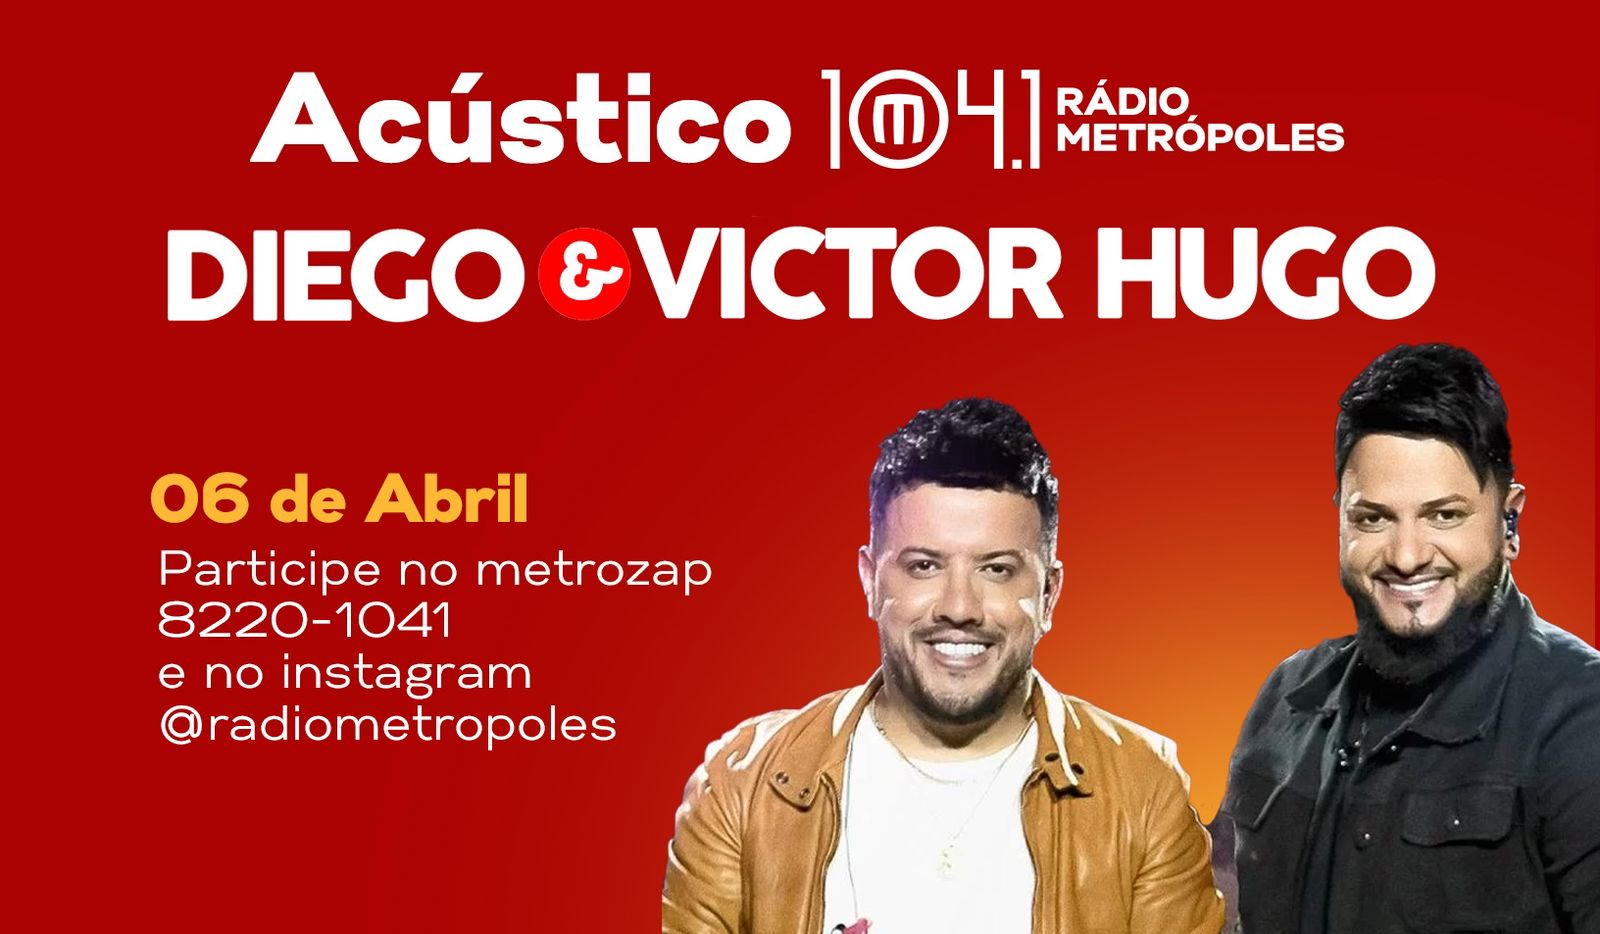 Acústico Diego & Victor Hugo